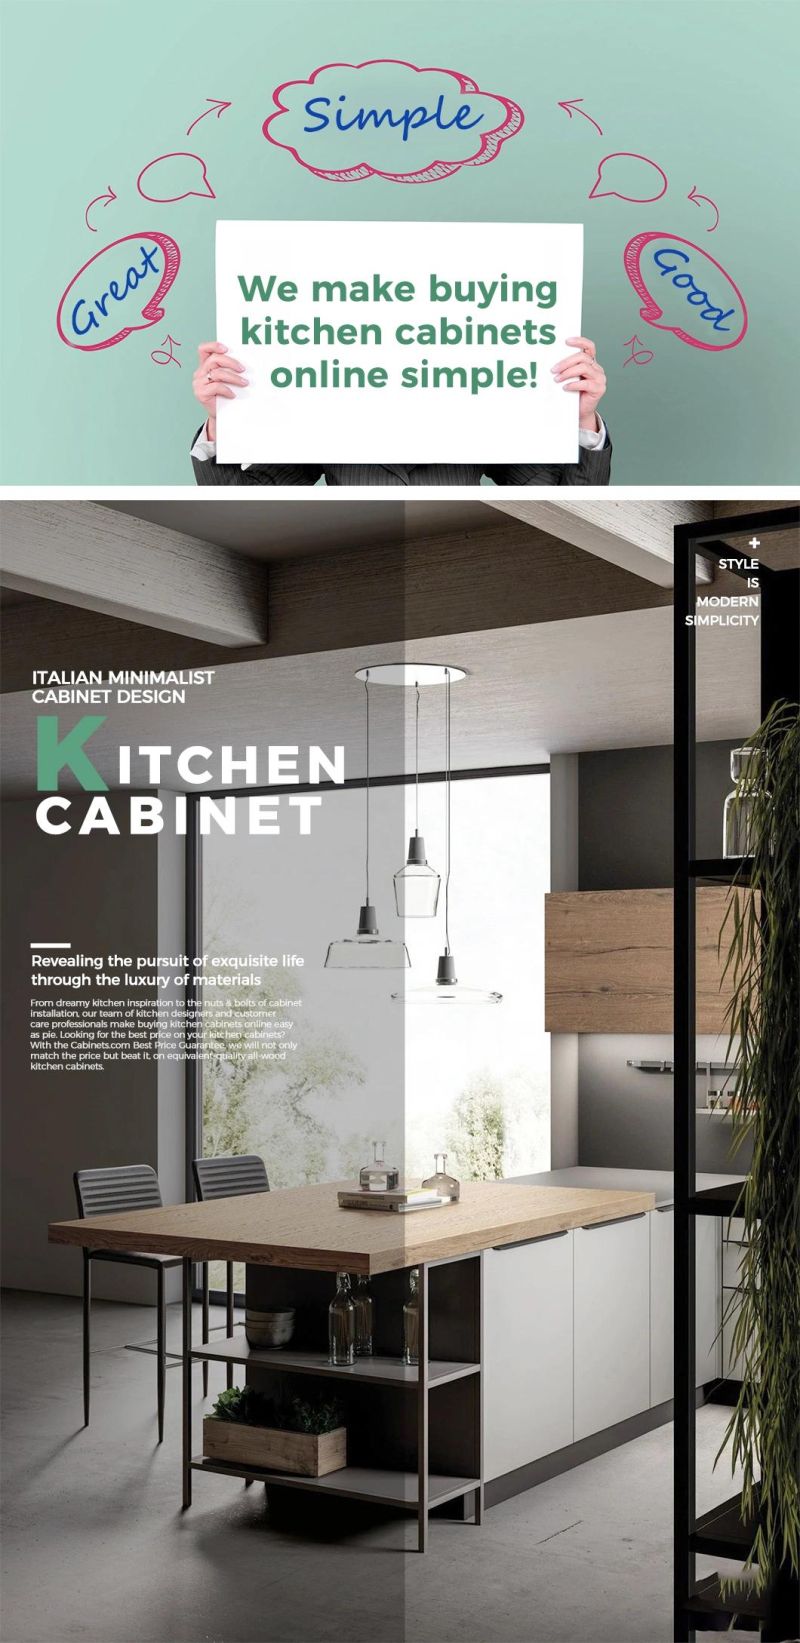 Luxury MDF Wood Pantry Kitchen Modern Designs Skin Melamine Finish Kitchen Cabinets